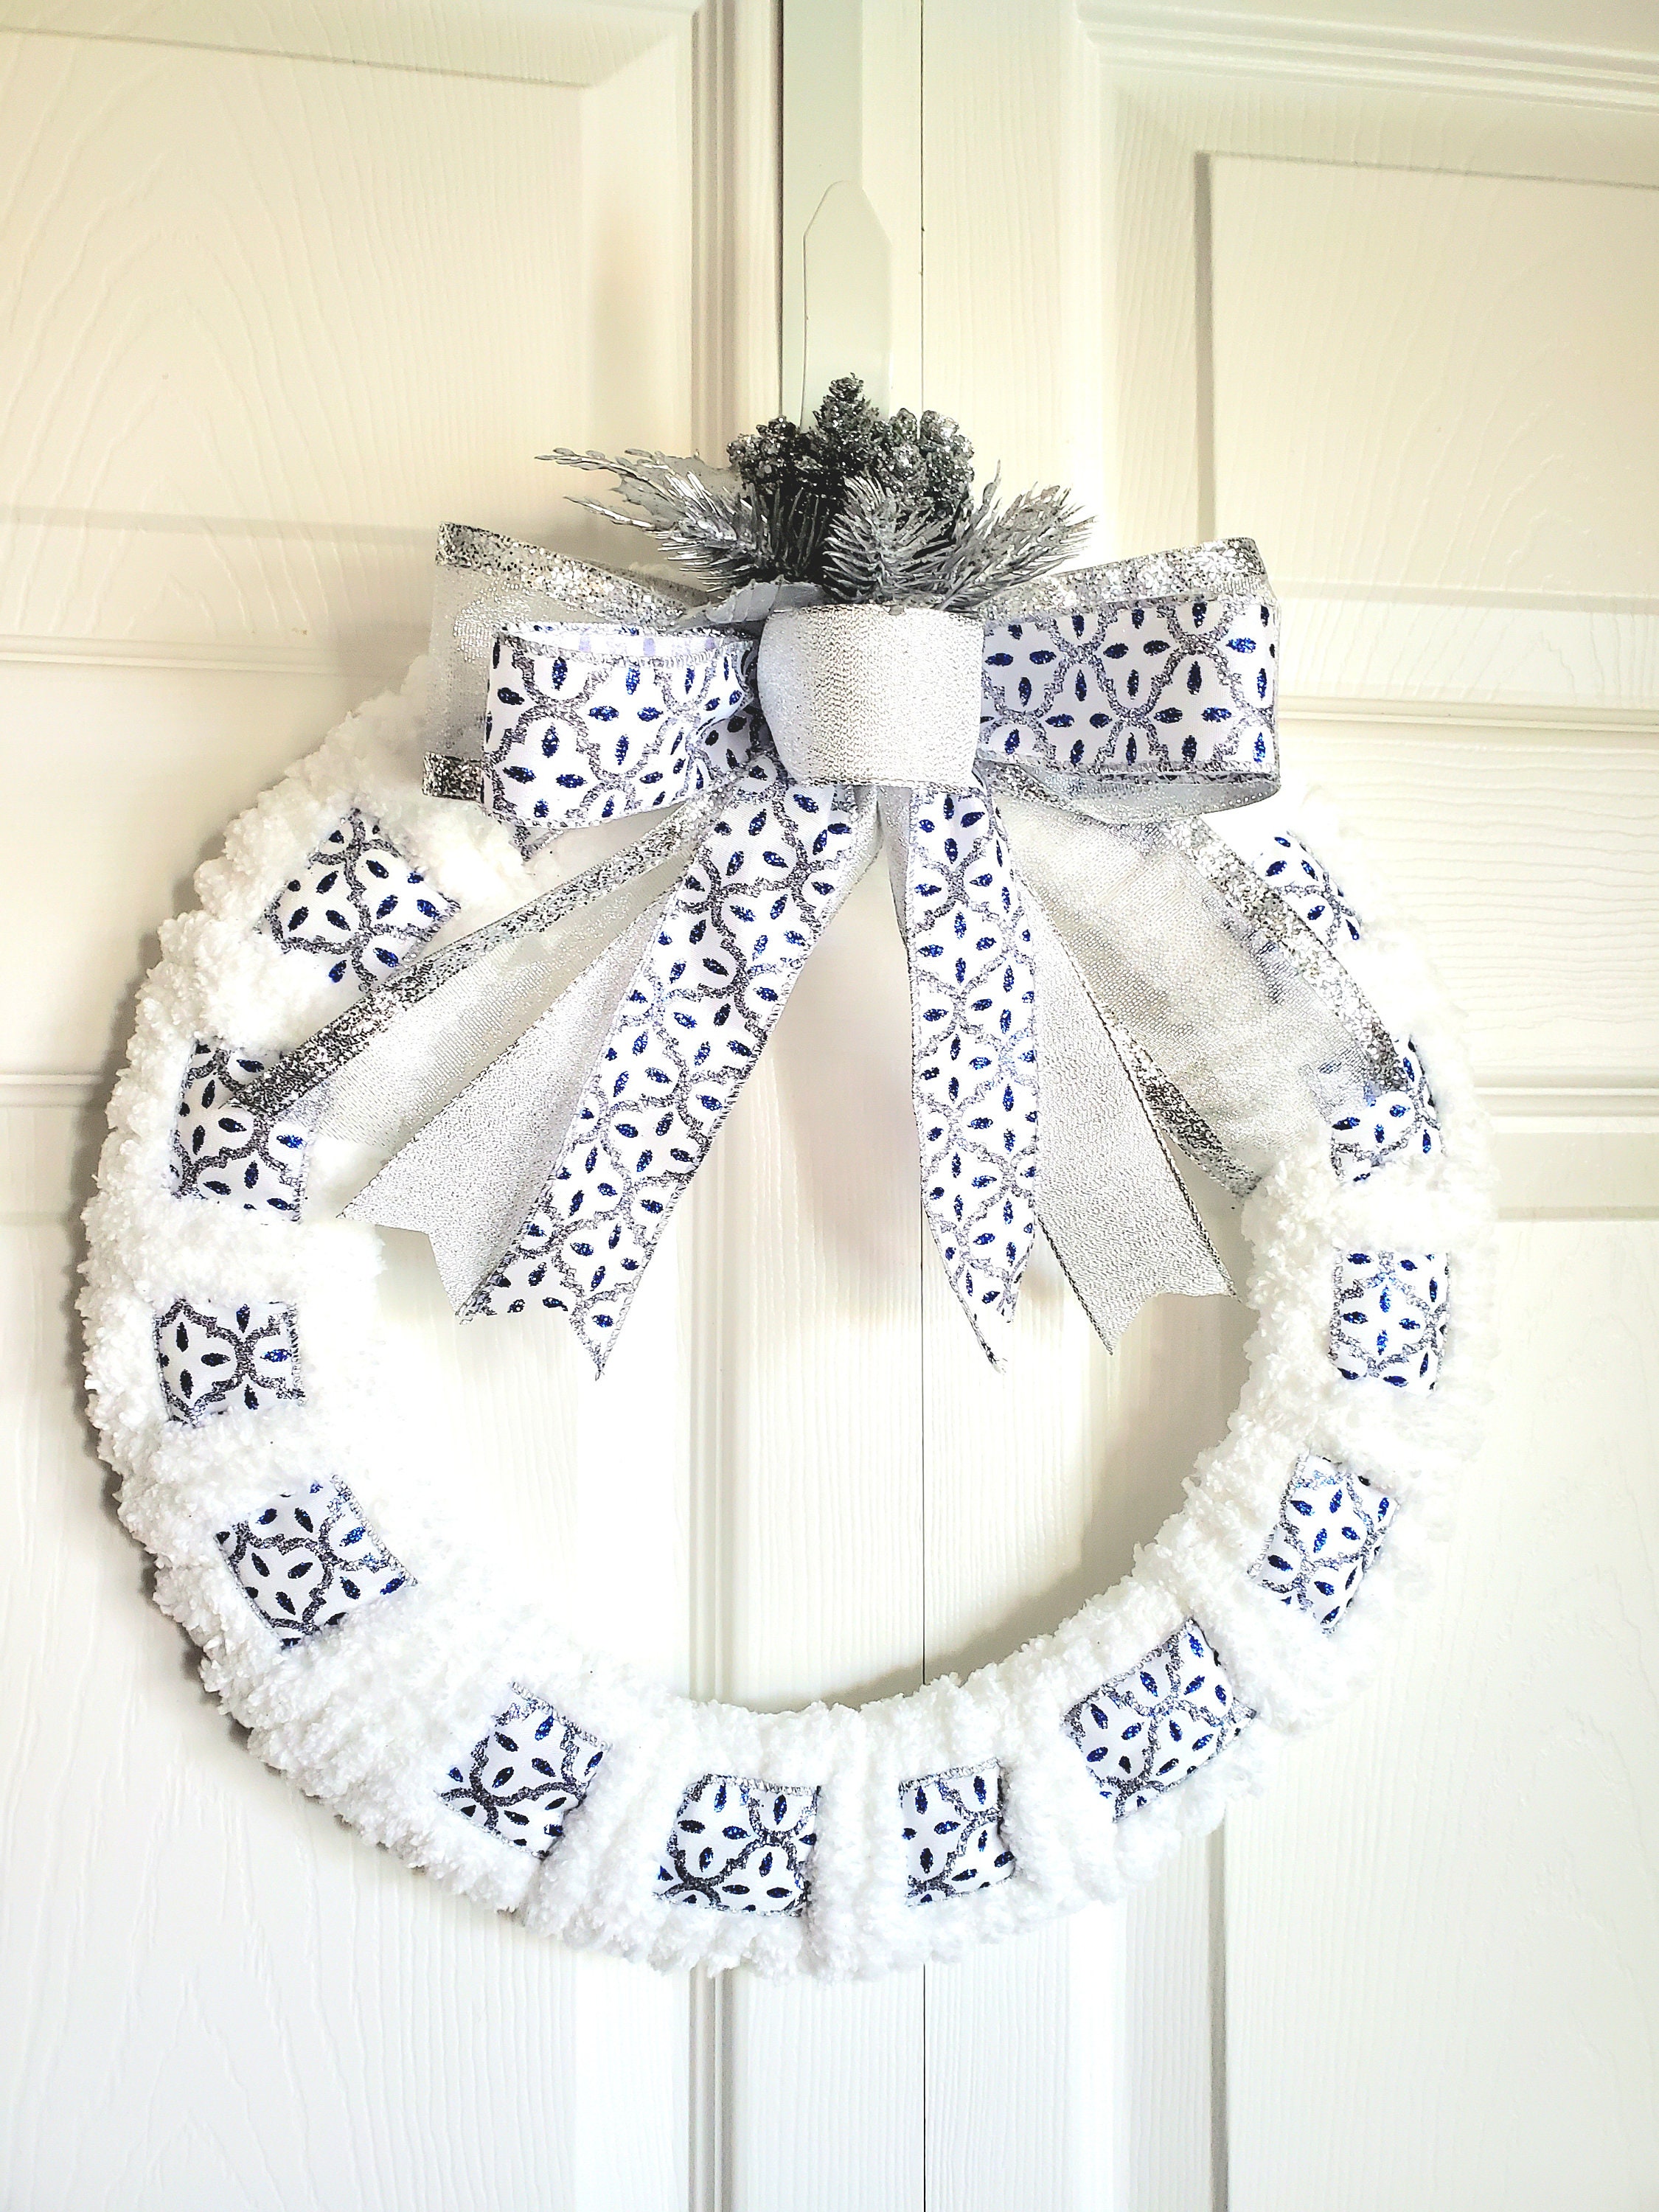 A Pretty Yarn Wreath - Decorchick!